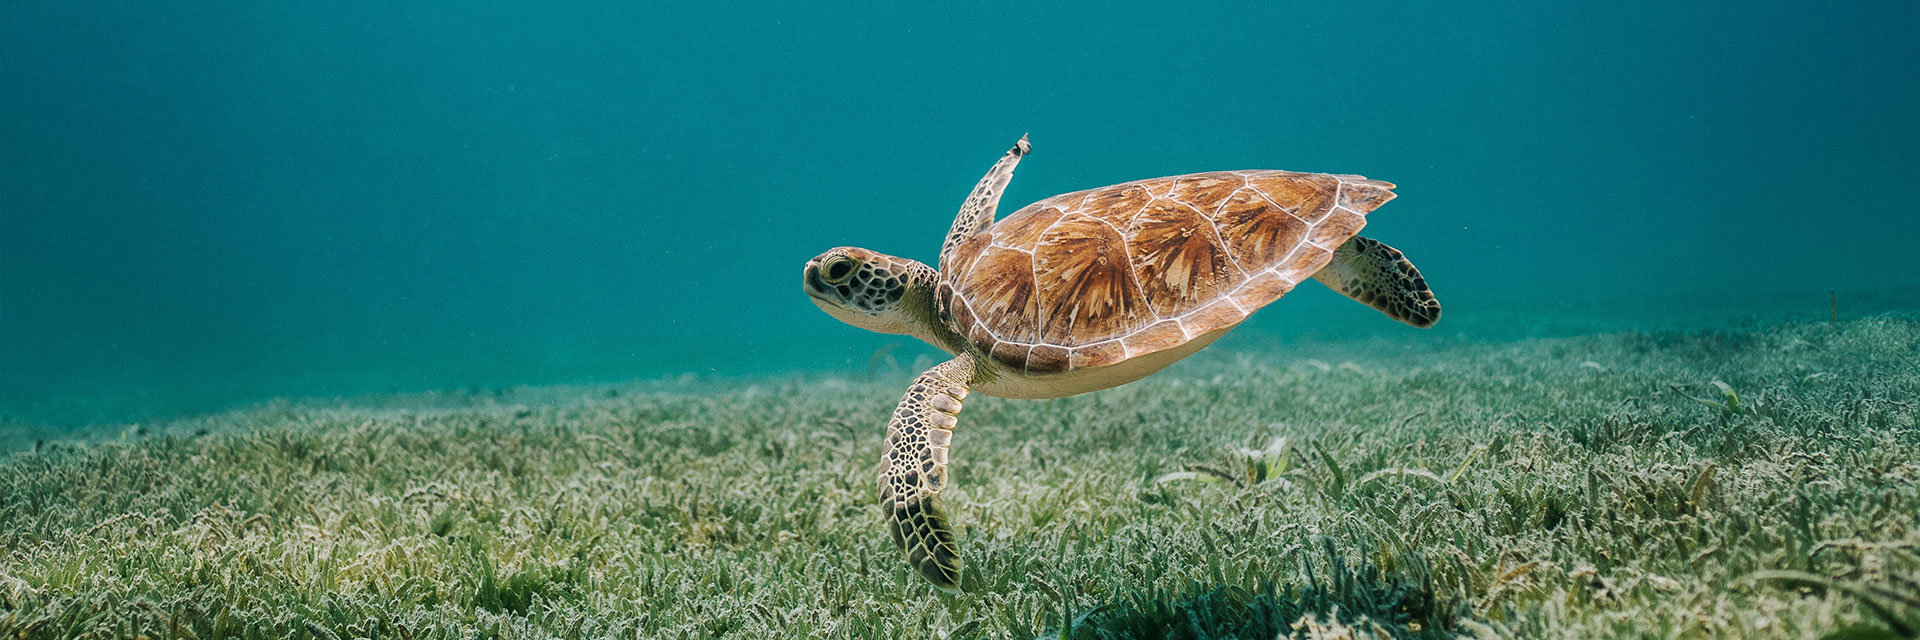 Brun sköldpadda under vatten.